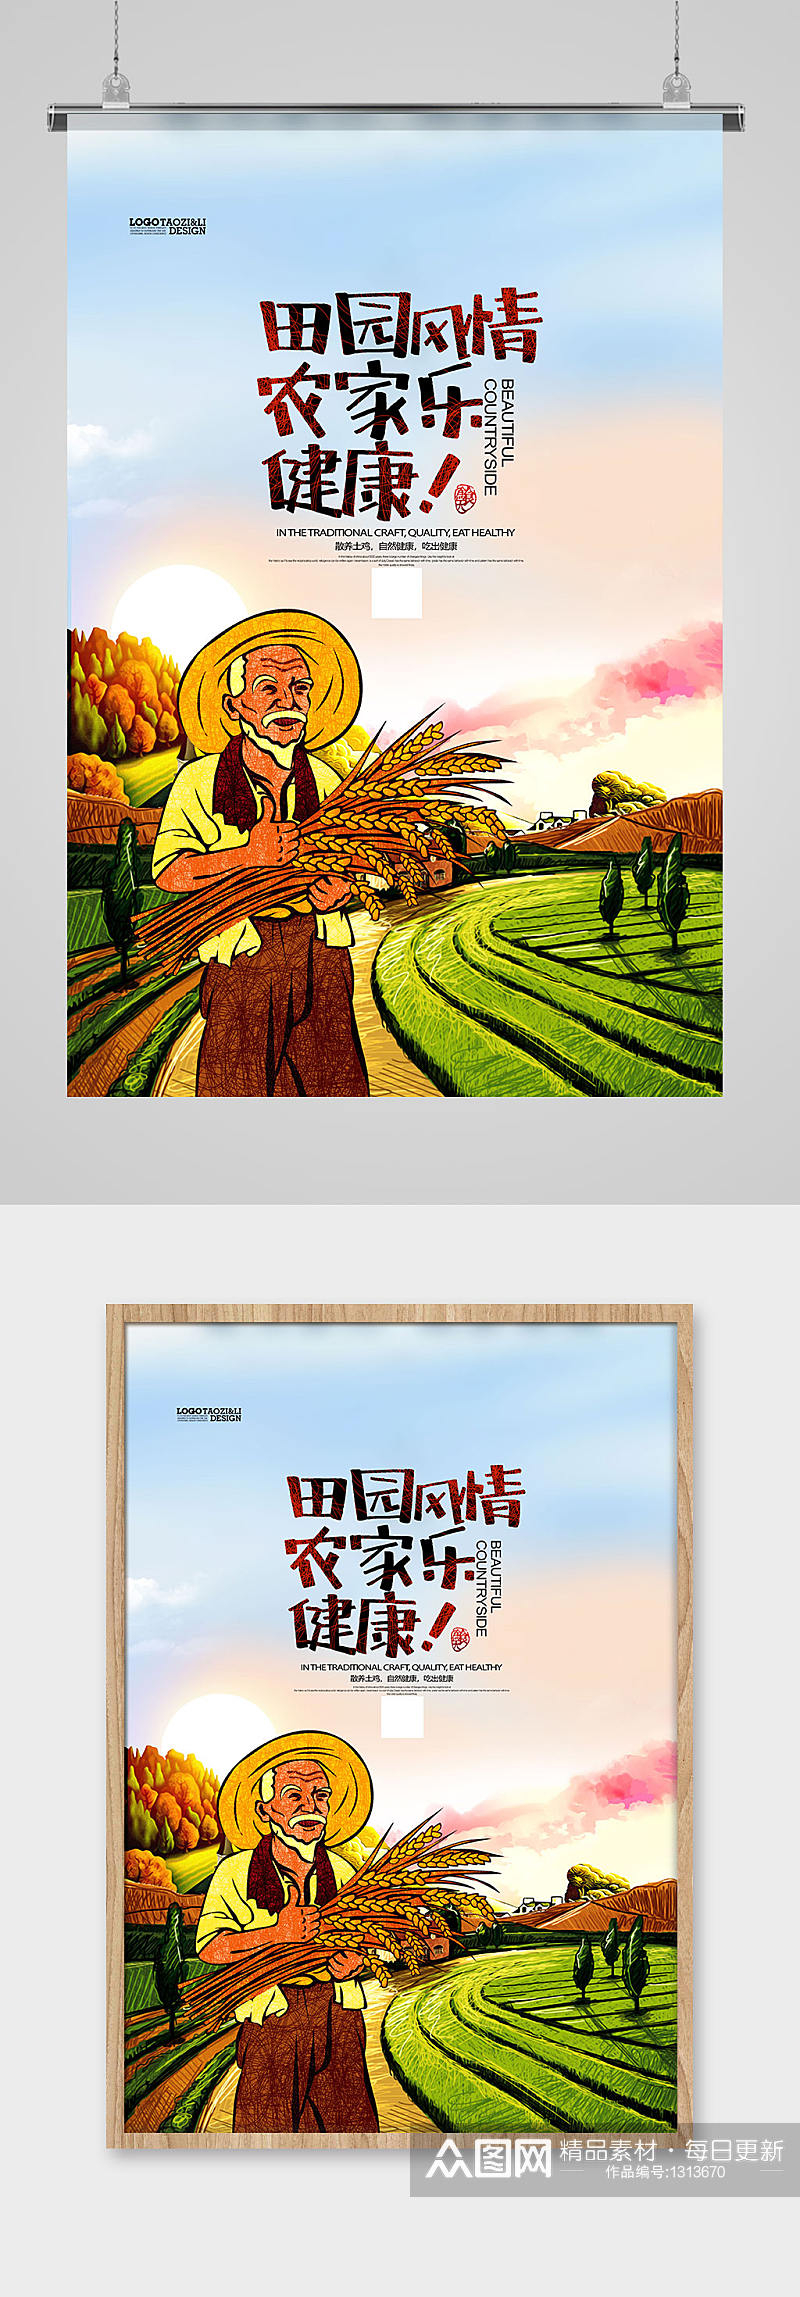 插画风乡村农家乐宣传海报设计素材